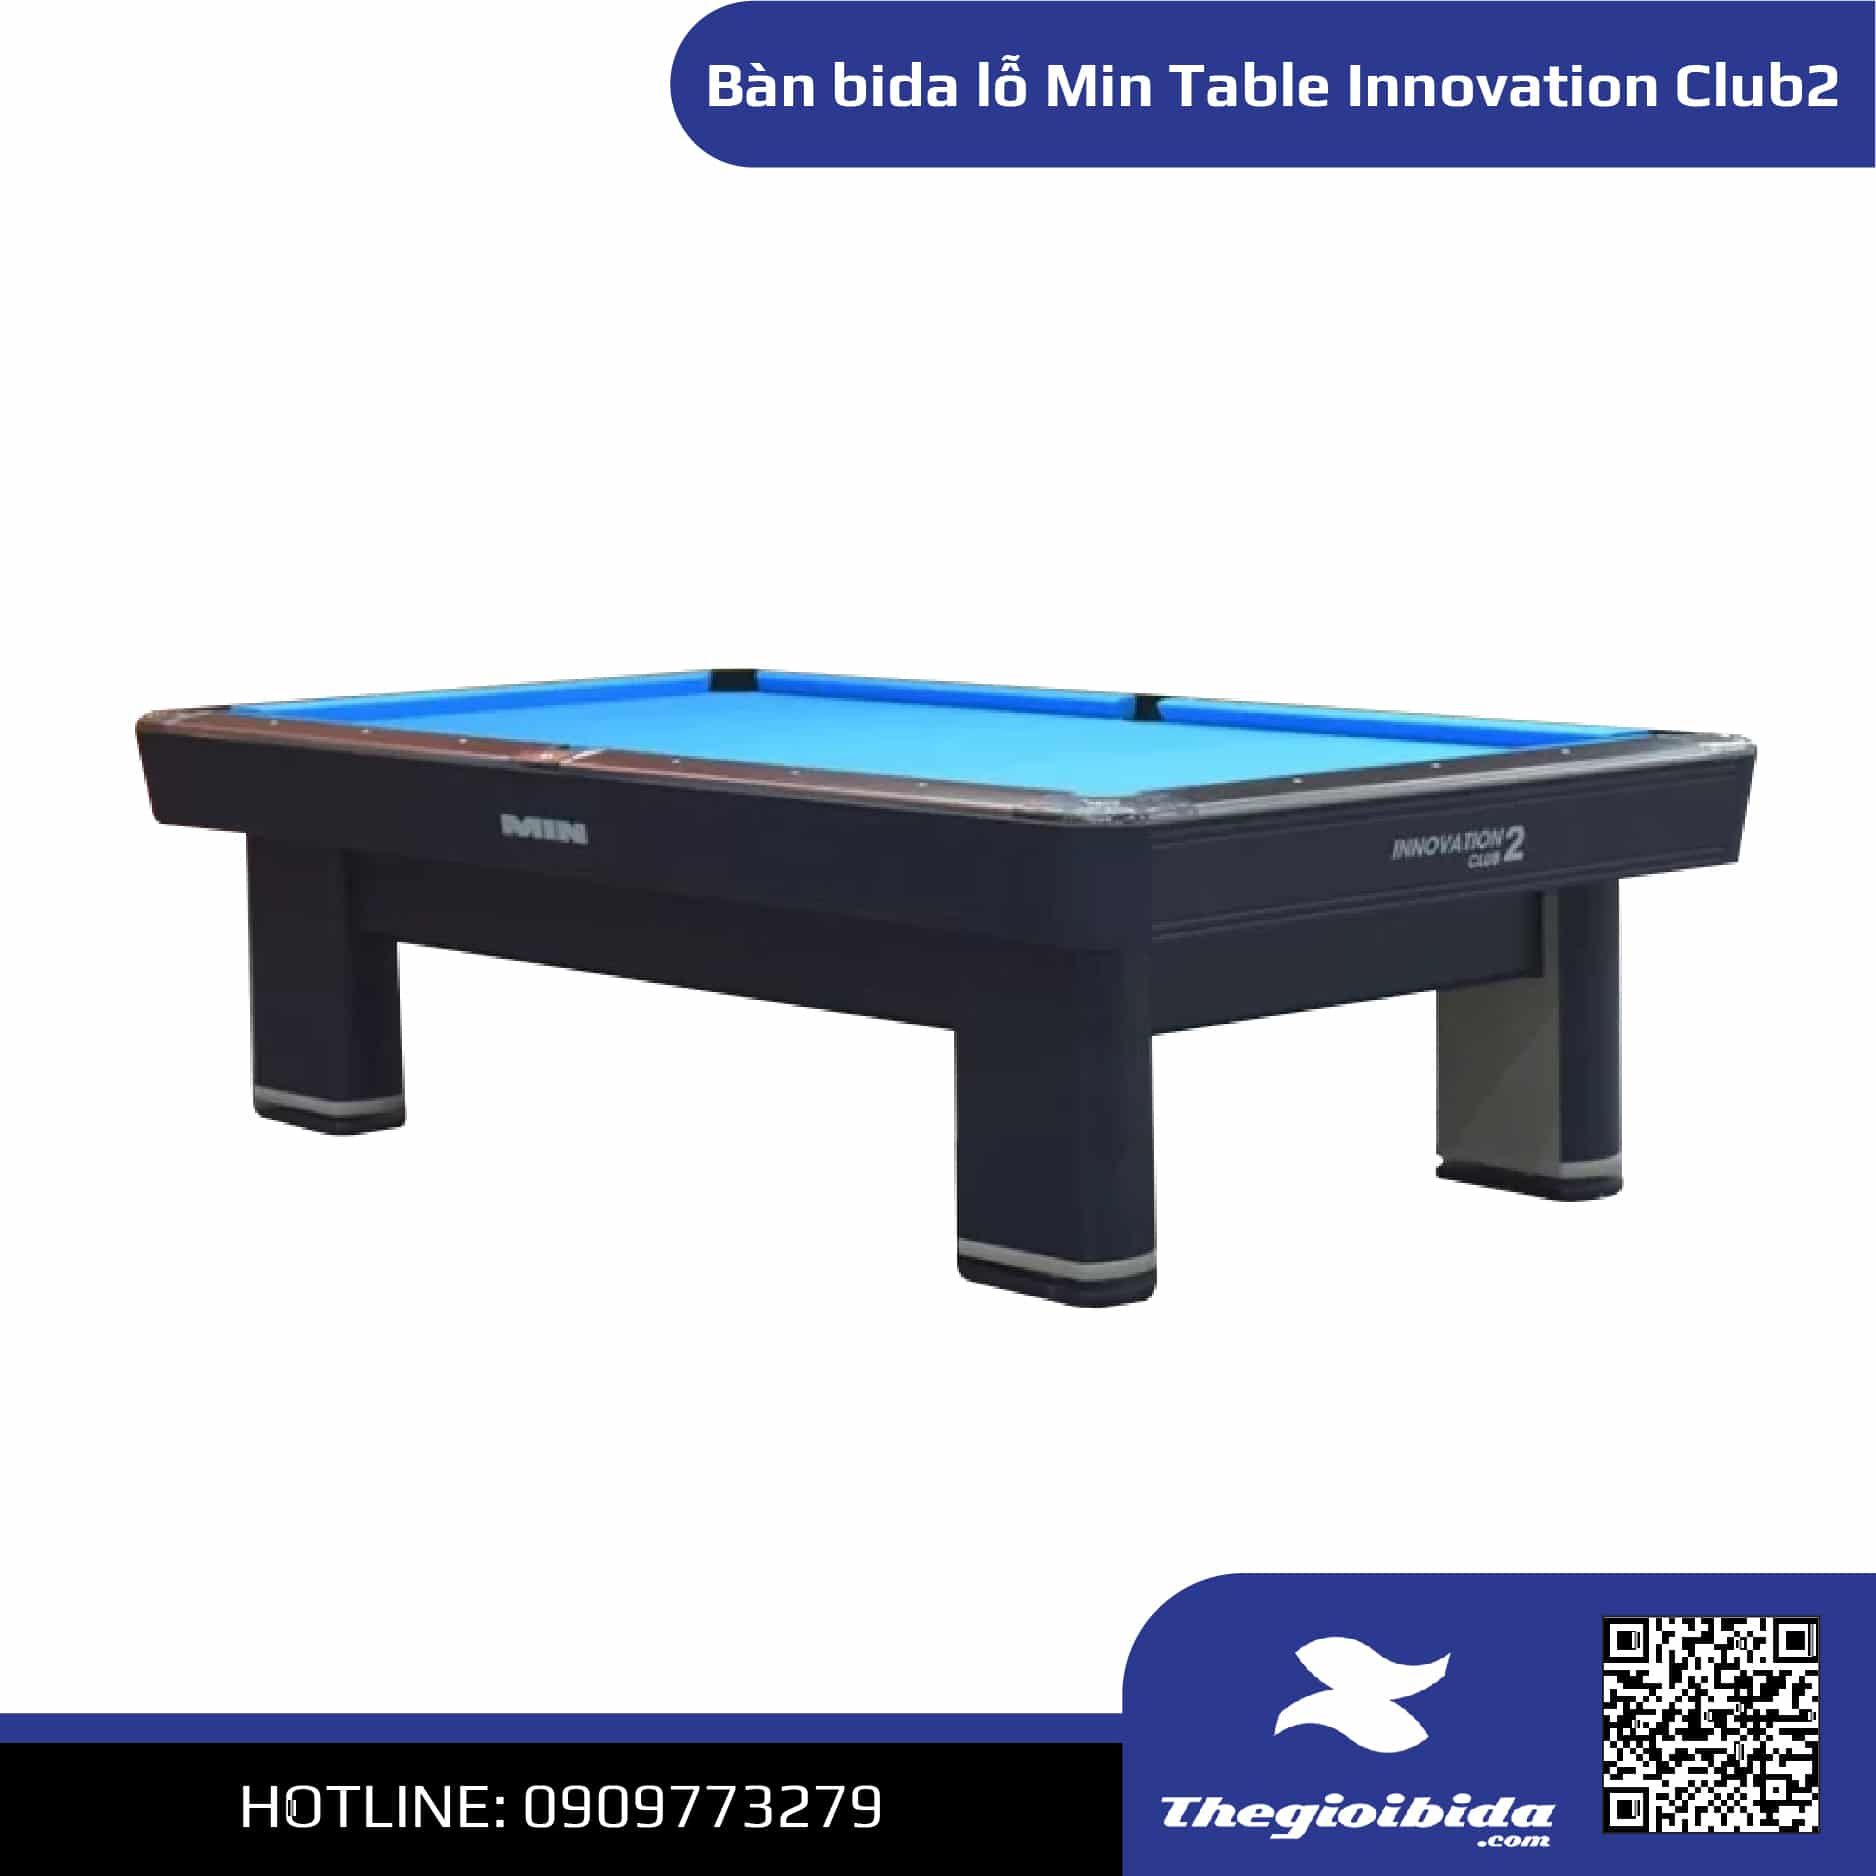 Bàn bida lỗ Min Table Innovation Club 2